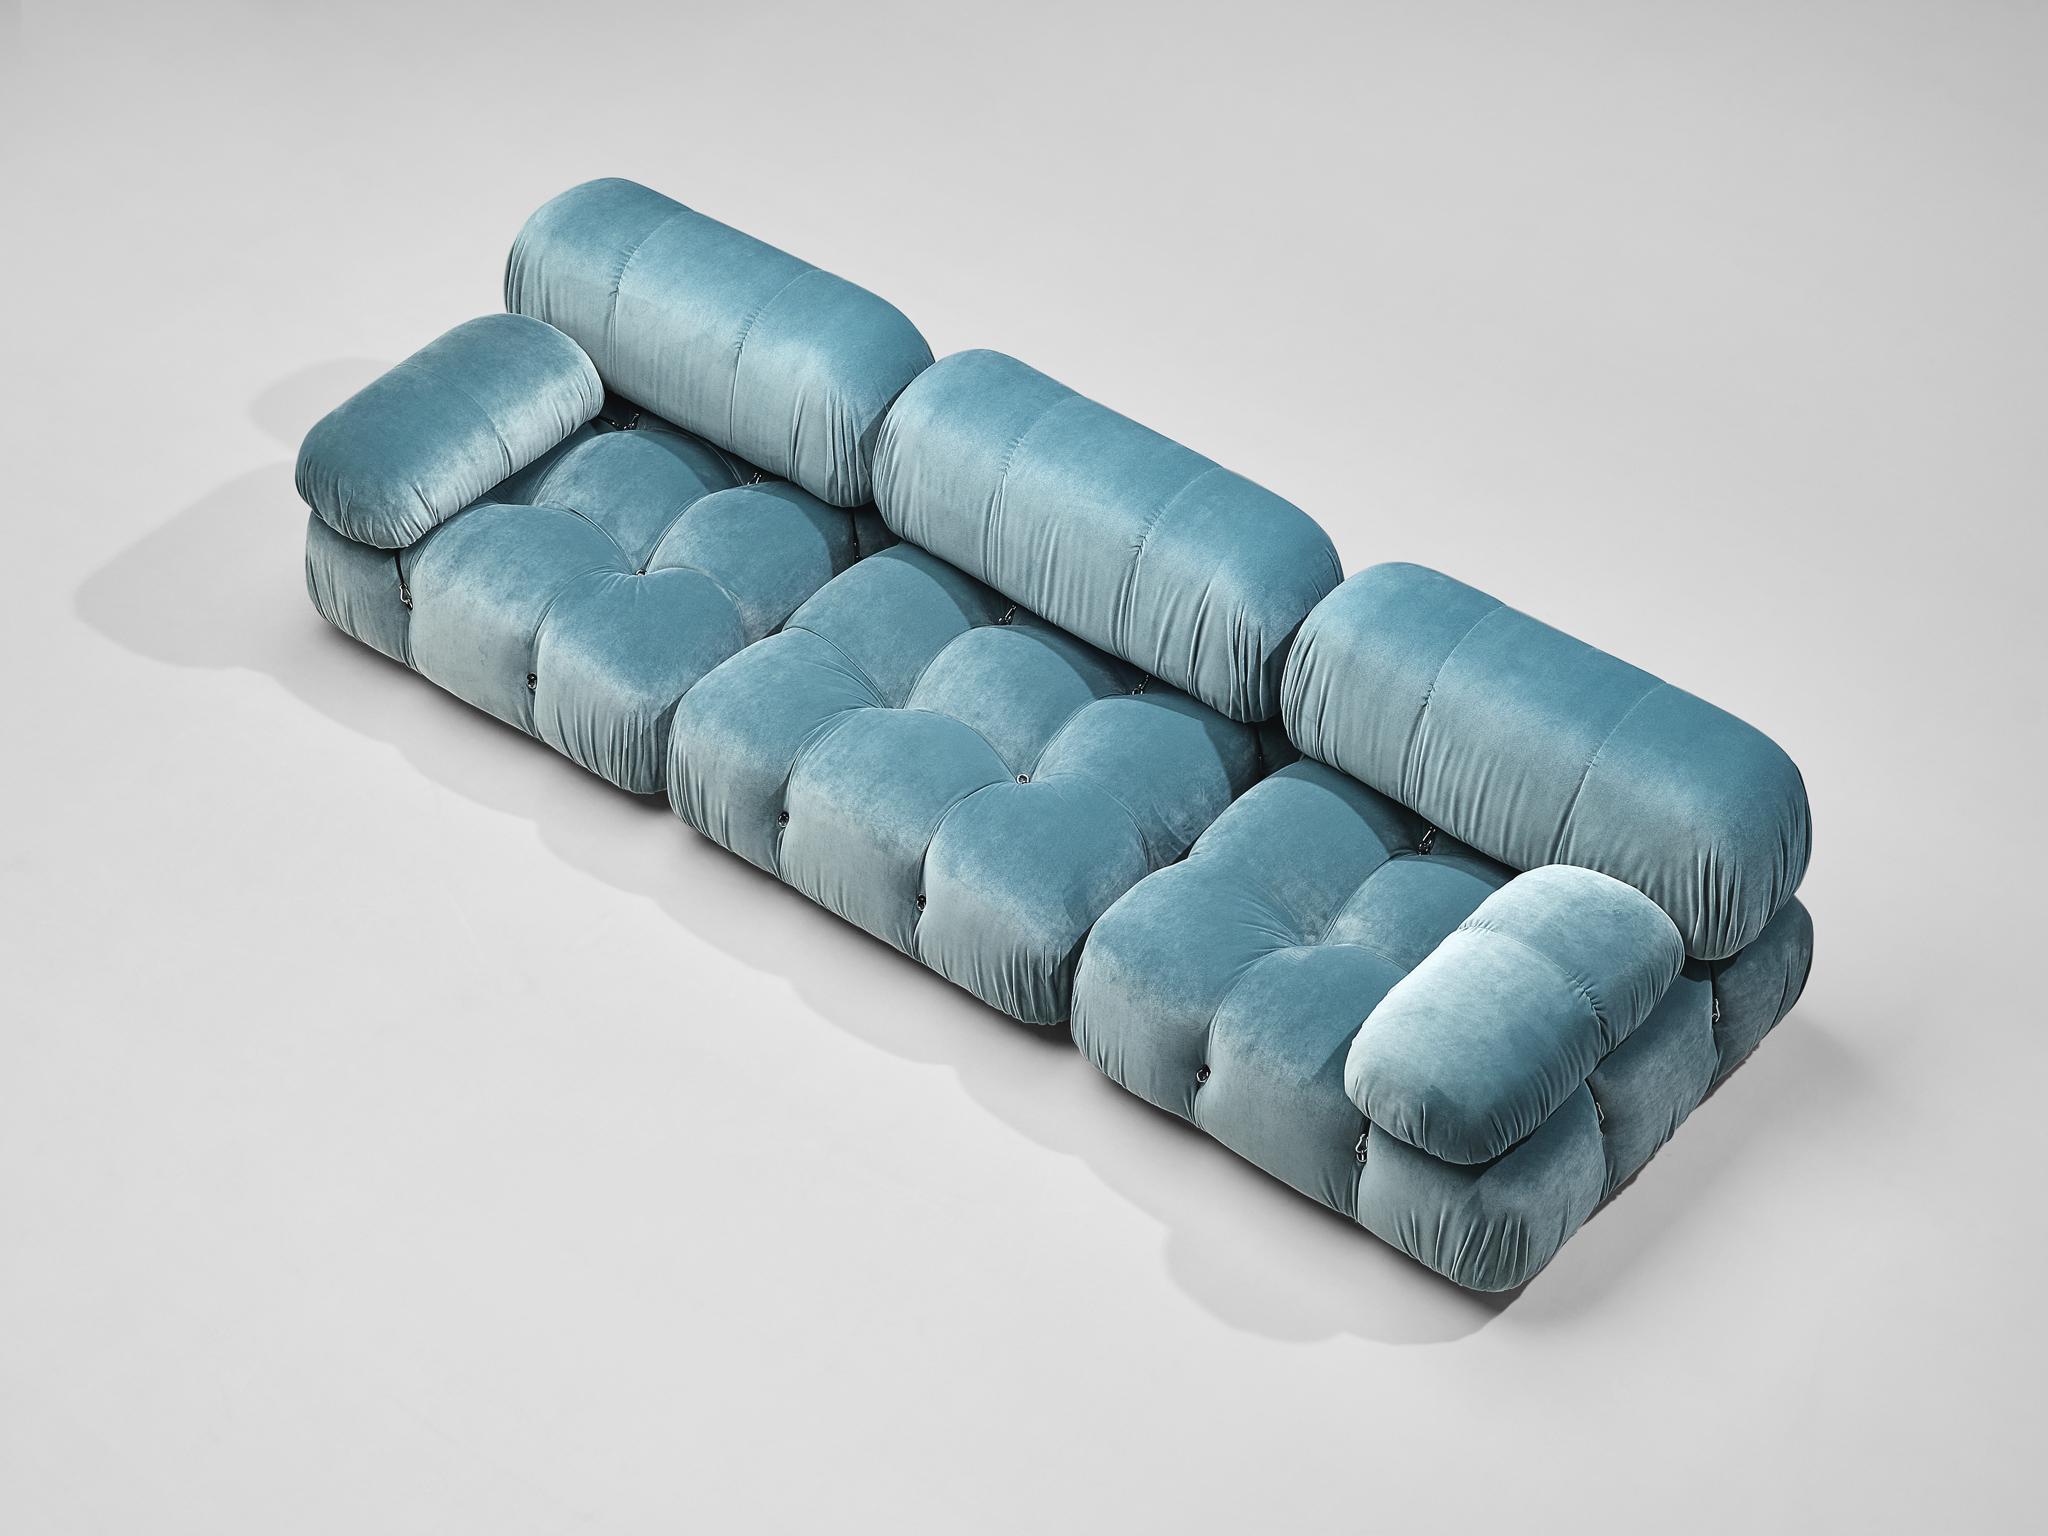 camaleonda sofa